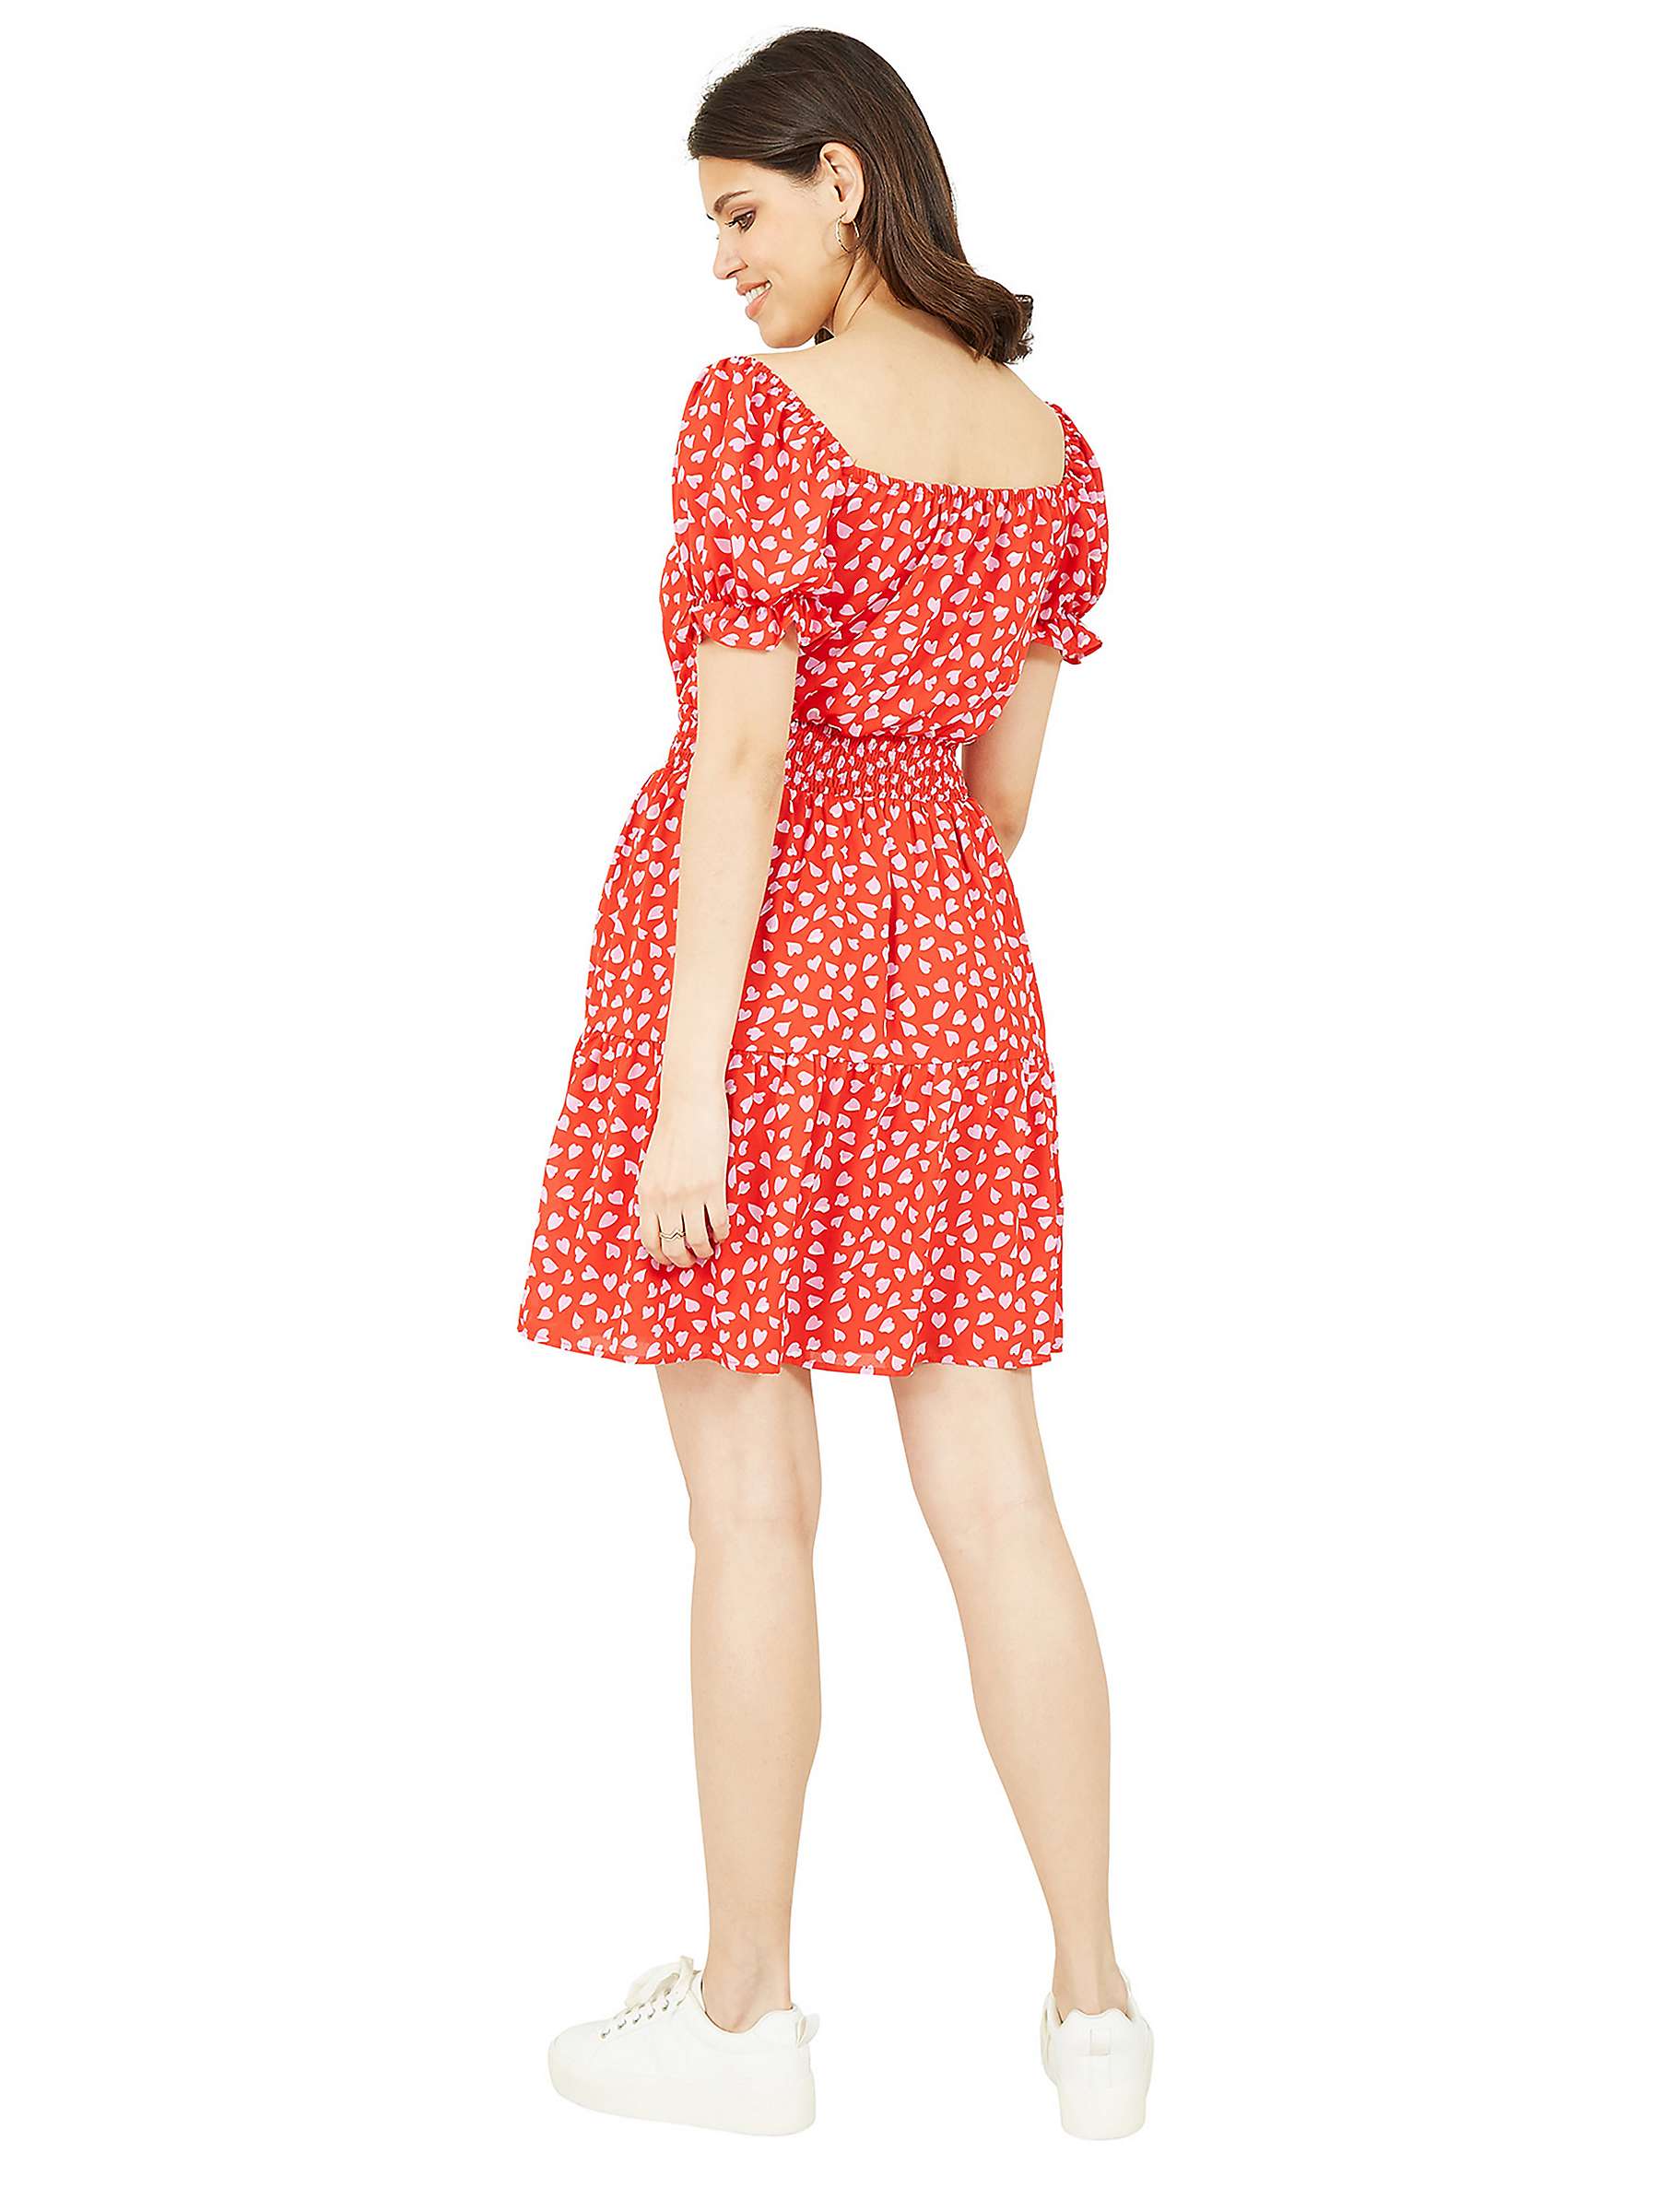 Buy Mela London Heart Print Bardot Skater Knee Length Dress, Red/Multi Online at johnlewis.com